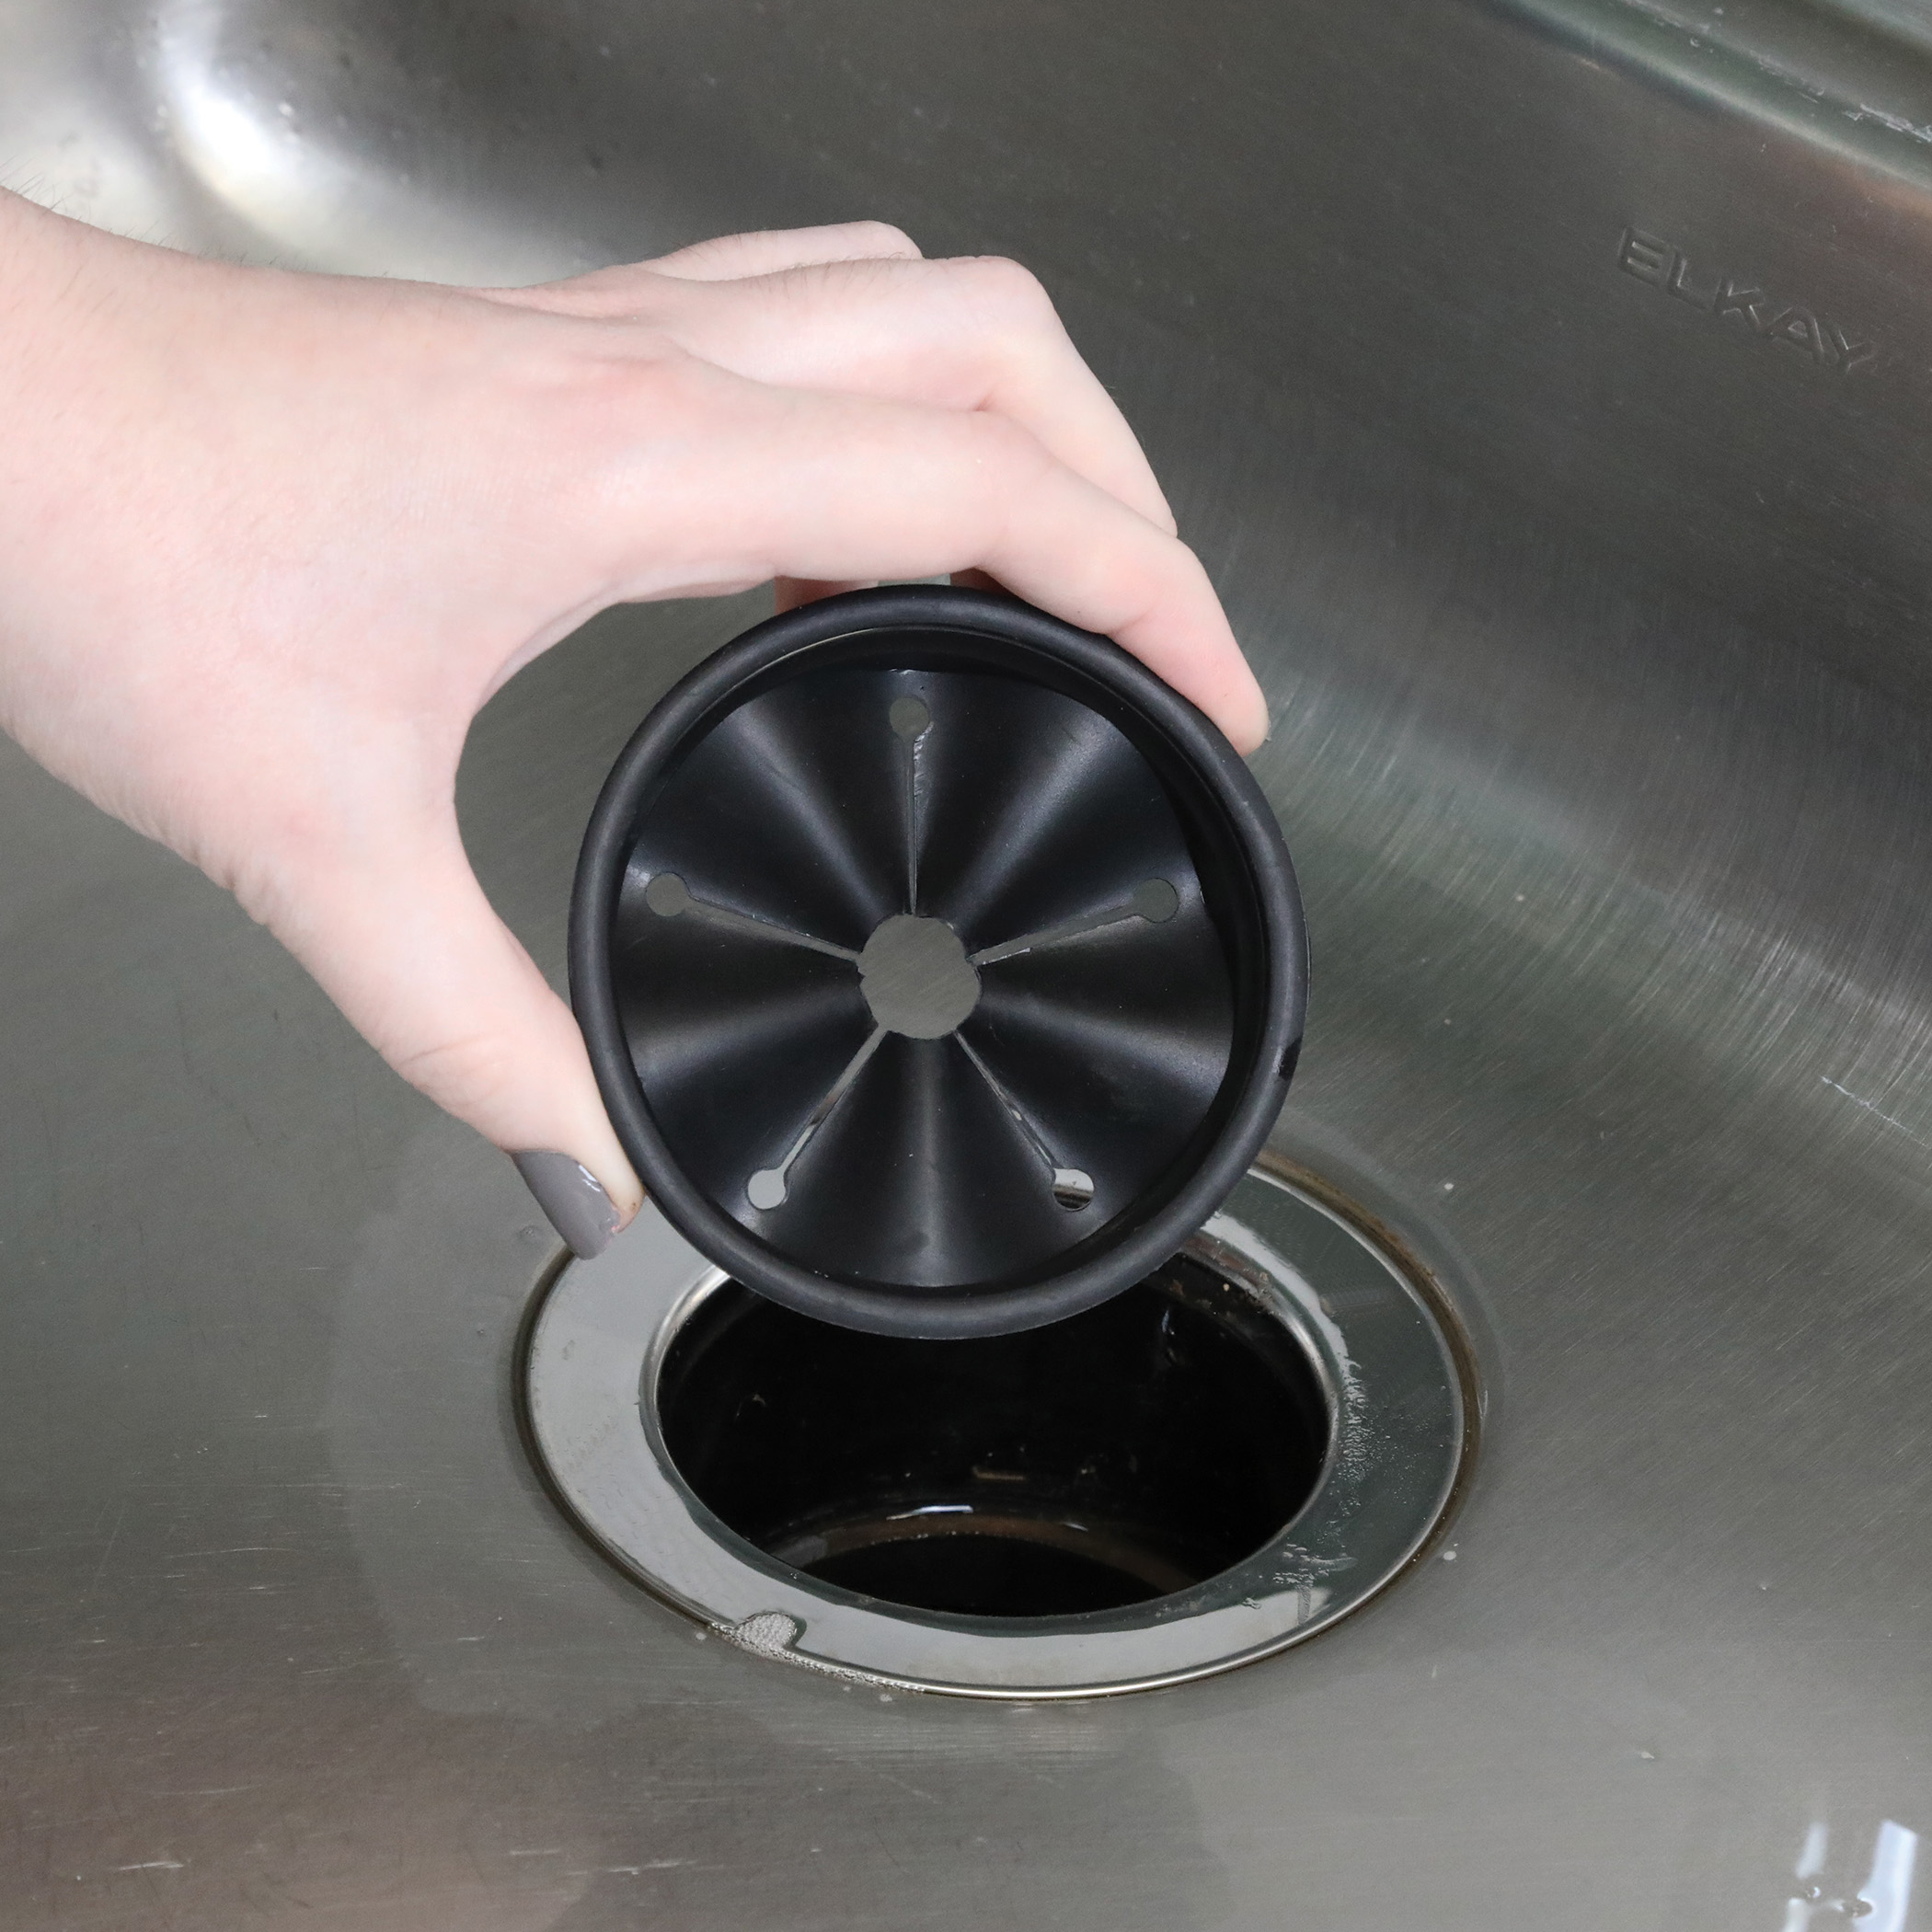 Danco 10427 Kitchen Sink Drain Garbage Disposal, 3.25 inches, Black